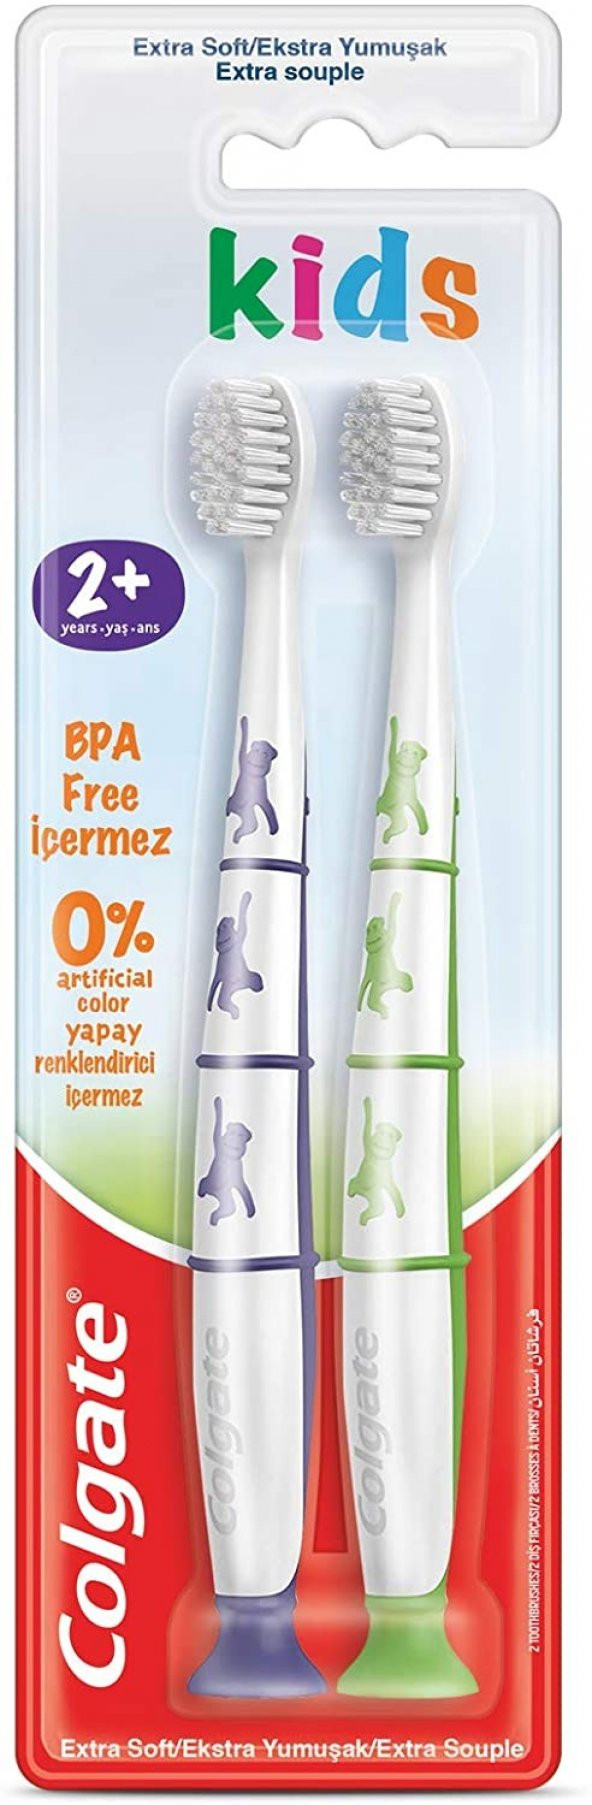 Colgate 2+ Yaş Ekstra Yumuşak BPA İçermeyen Çocuk Diş Fırçası 1 Paket (1 x 1 Adet)